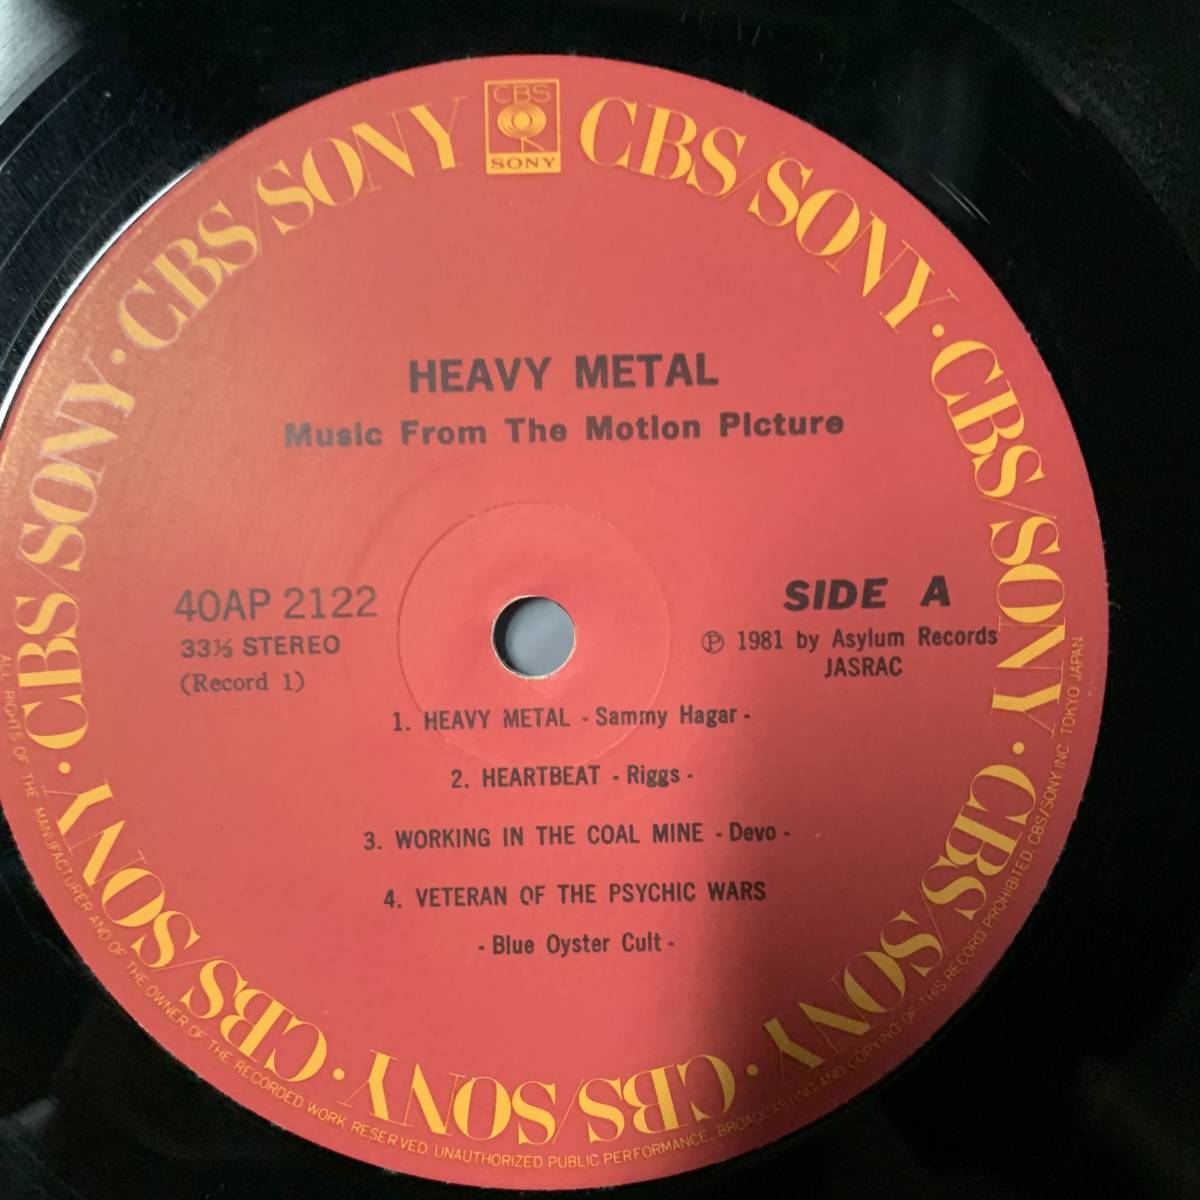 G11［LP］帯付き ヘヴィ・メタル Heavy Metal レコード ブラック・サバス ナザレス ジャーニー ディーヴォ 映画サントラ 40AP  2122-3